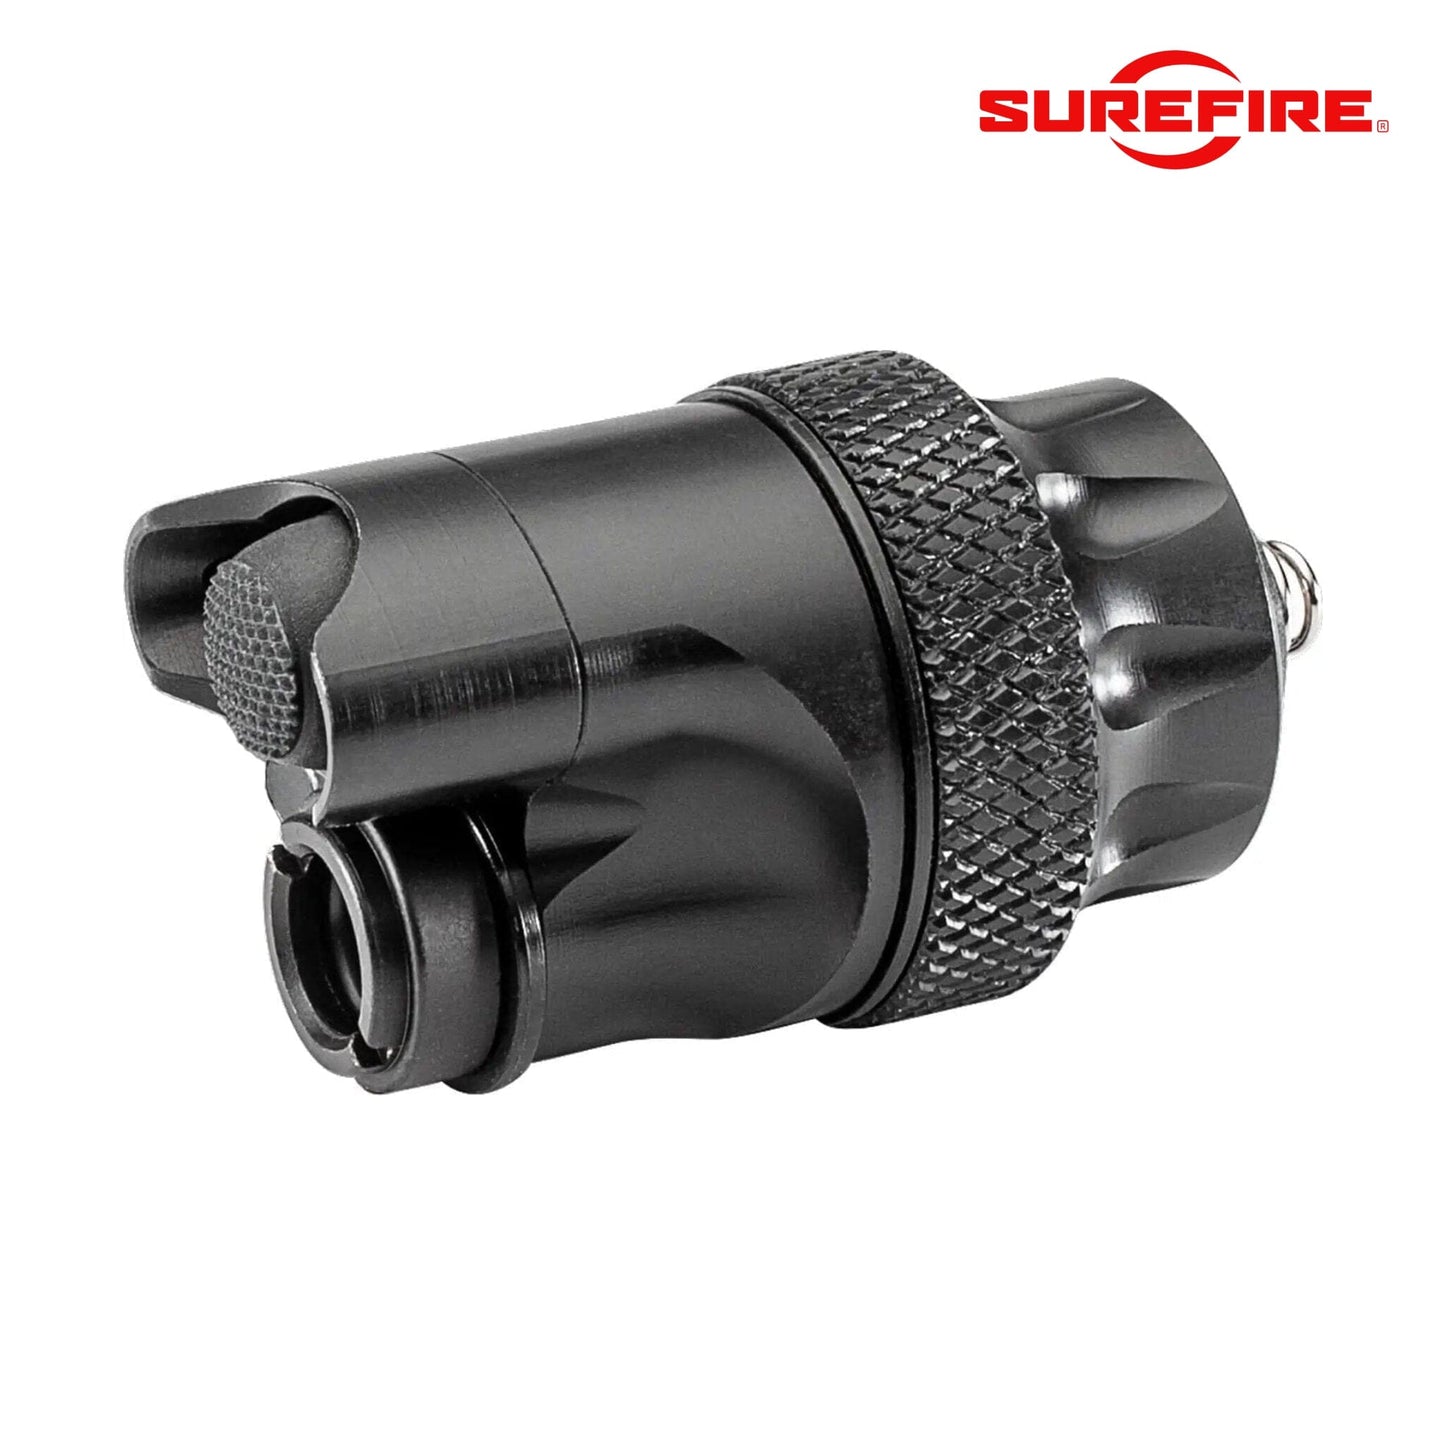 SureFire Scout Light Dual-Switch/Tailcap Assembly Black - DS00 Weapon Light Accessories SureFire 